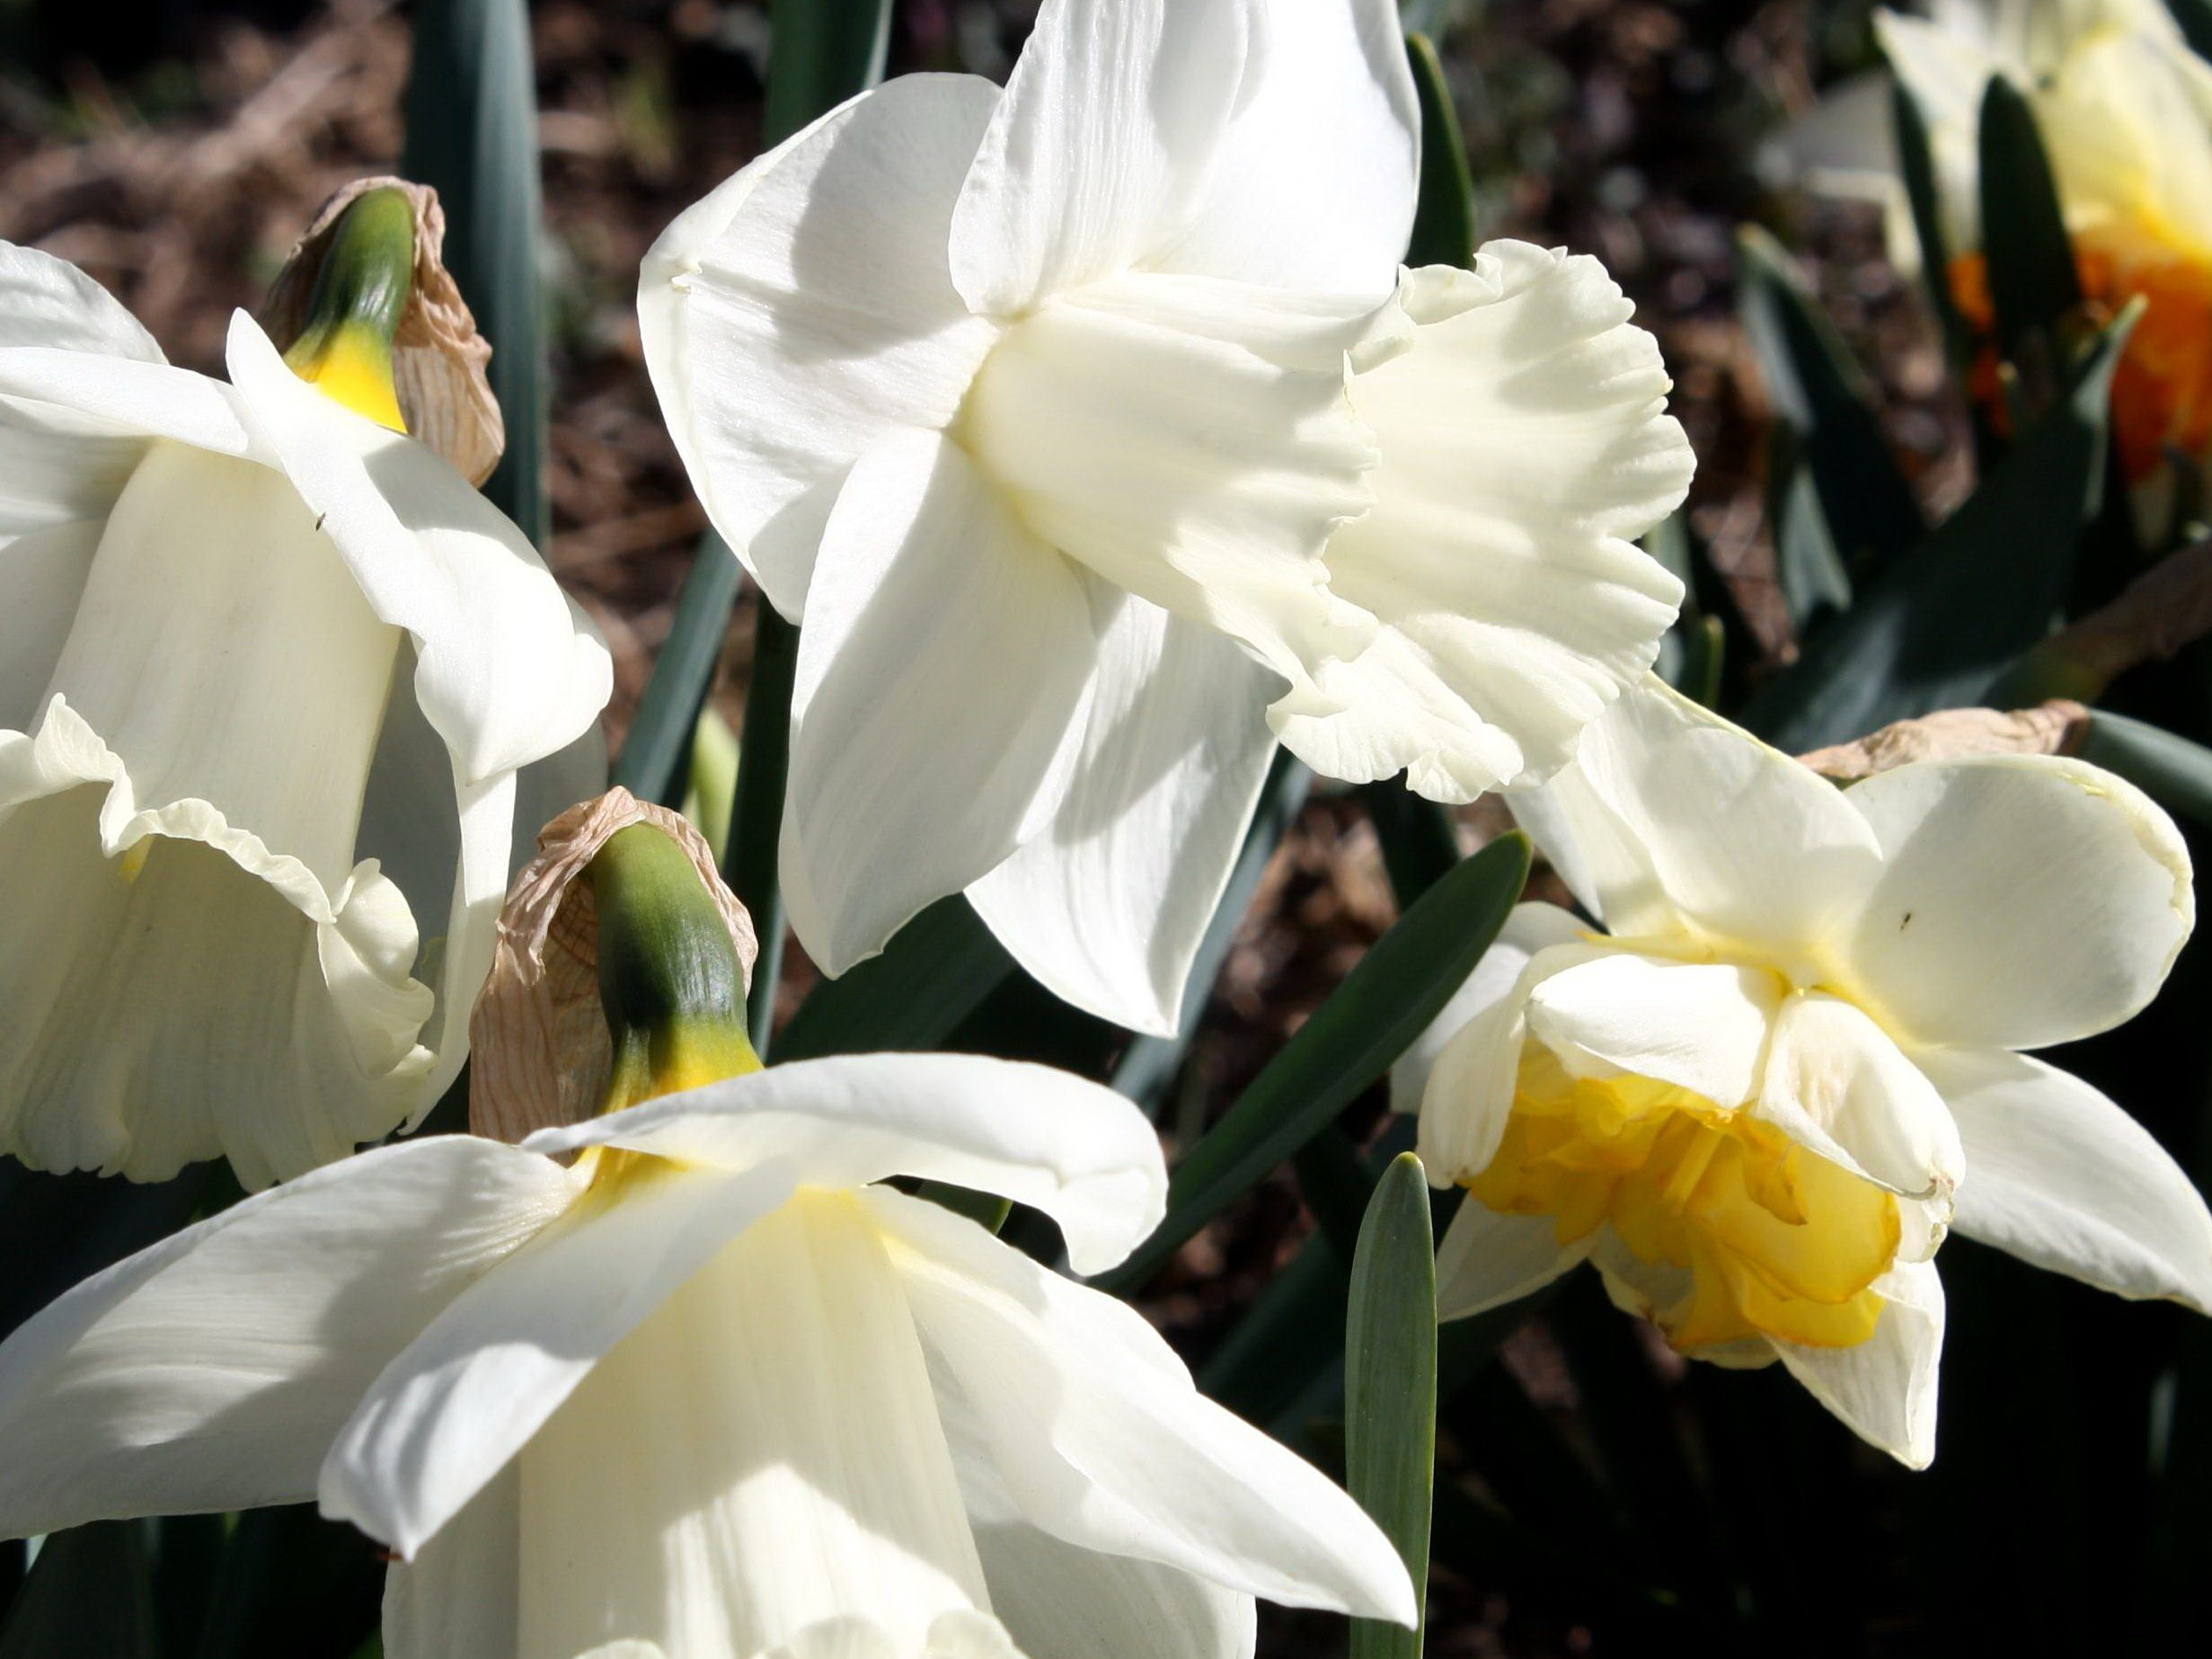 Image libre: fleurs jonquille, jonquilles blanches, pistil, végétation,  pétales